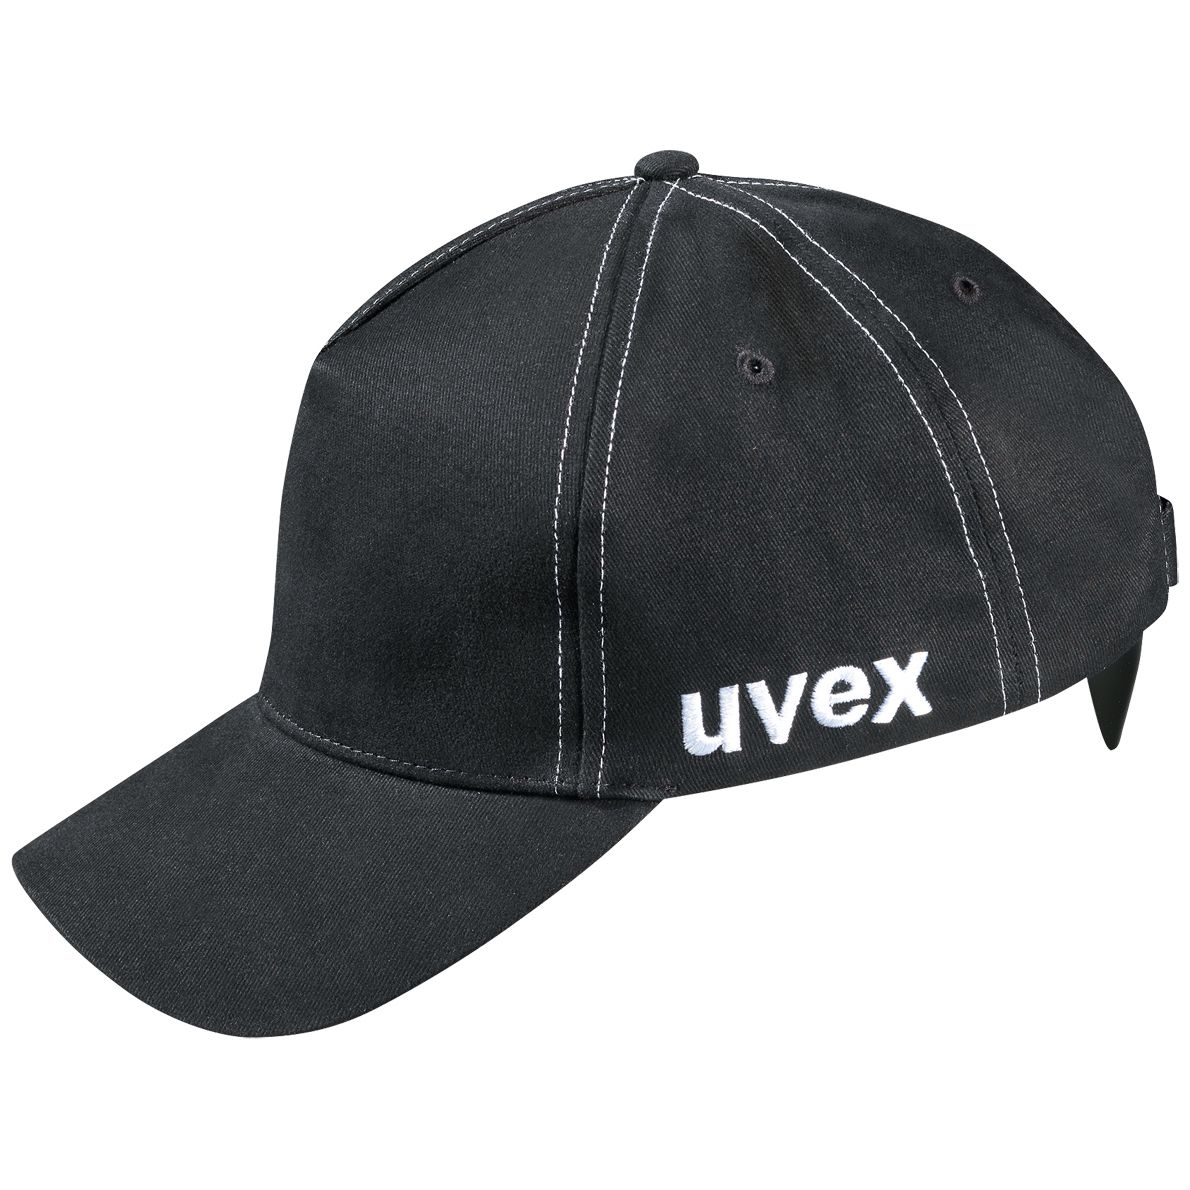 uvex u-cap sport Anstoßkappe - Schutzkappe mit langem Schirm - für Bau & Industrie - EN 812 - Schwarz - 55 bis 59 cm